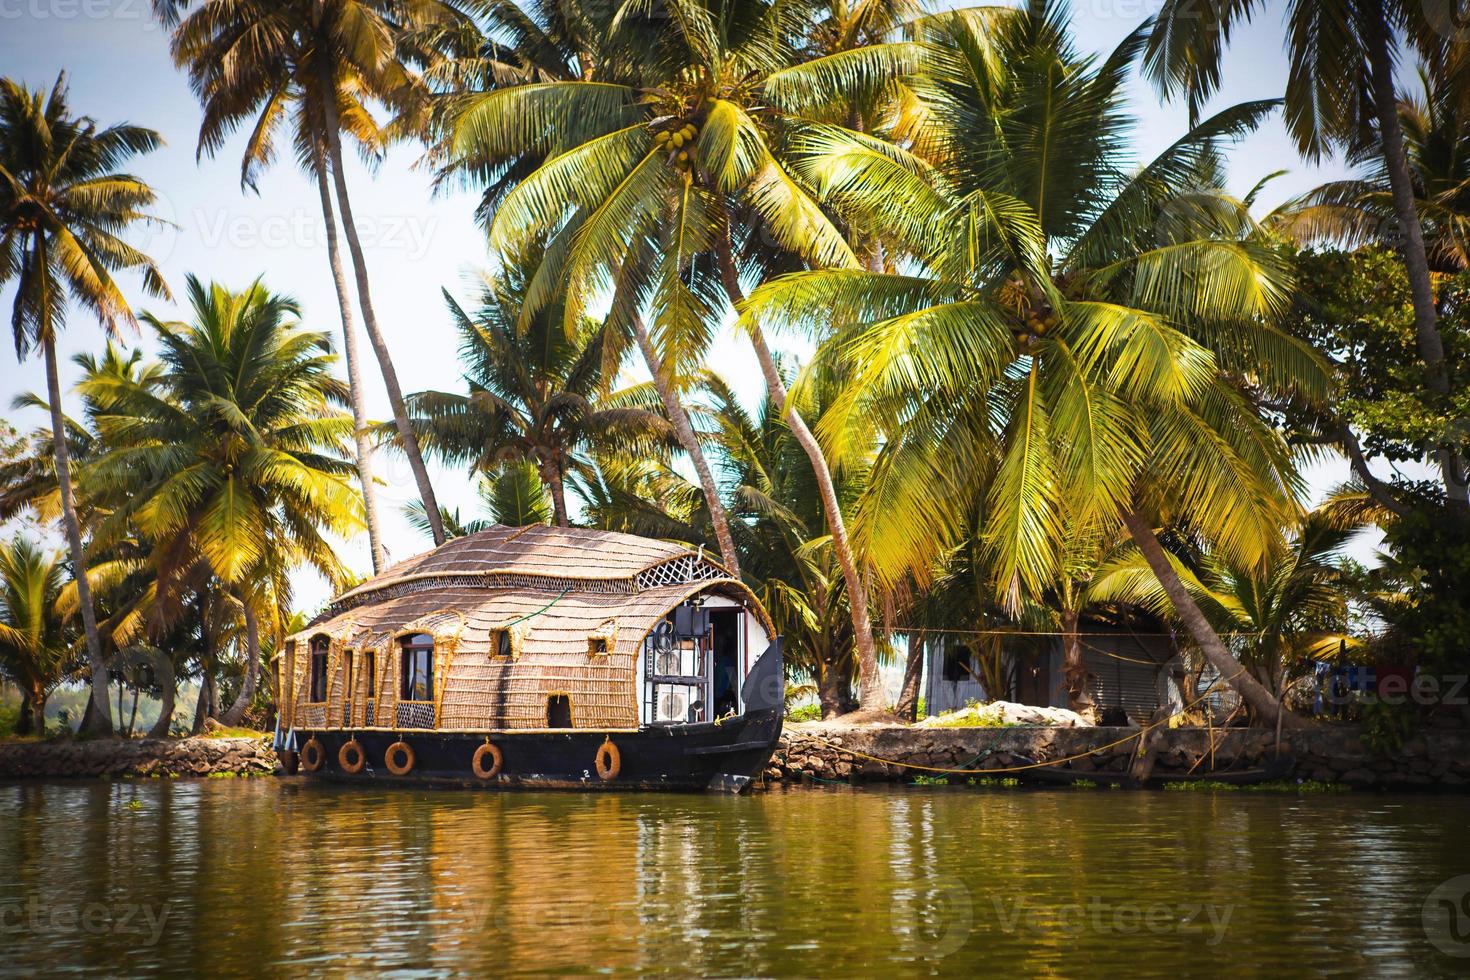 hausboot vergnügungskreuzfahrtschiff in indien, kerala auf den mit algen bedeckten flusskanälen von allapuzha in indien. Boot auf dem See in der hellen Sonne und Palmen inmitten der Tropen. Hausboot sehen foto